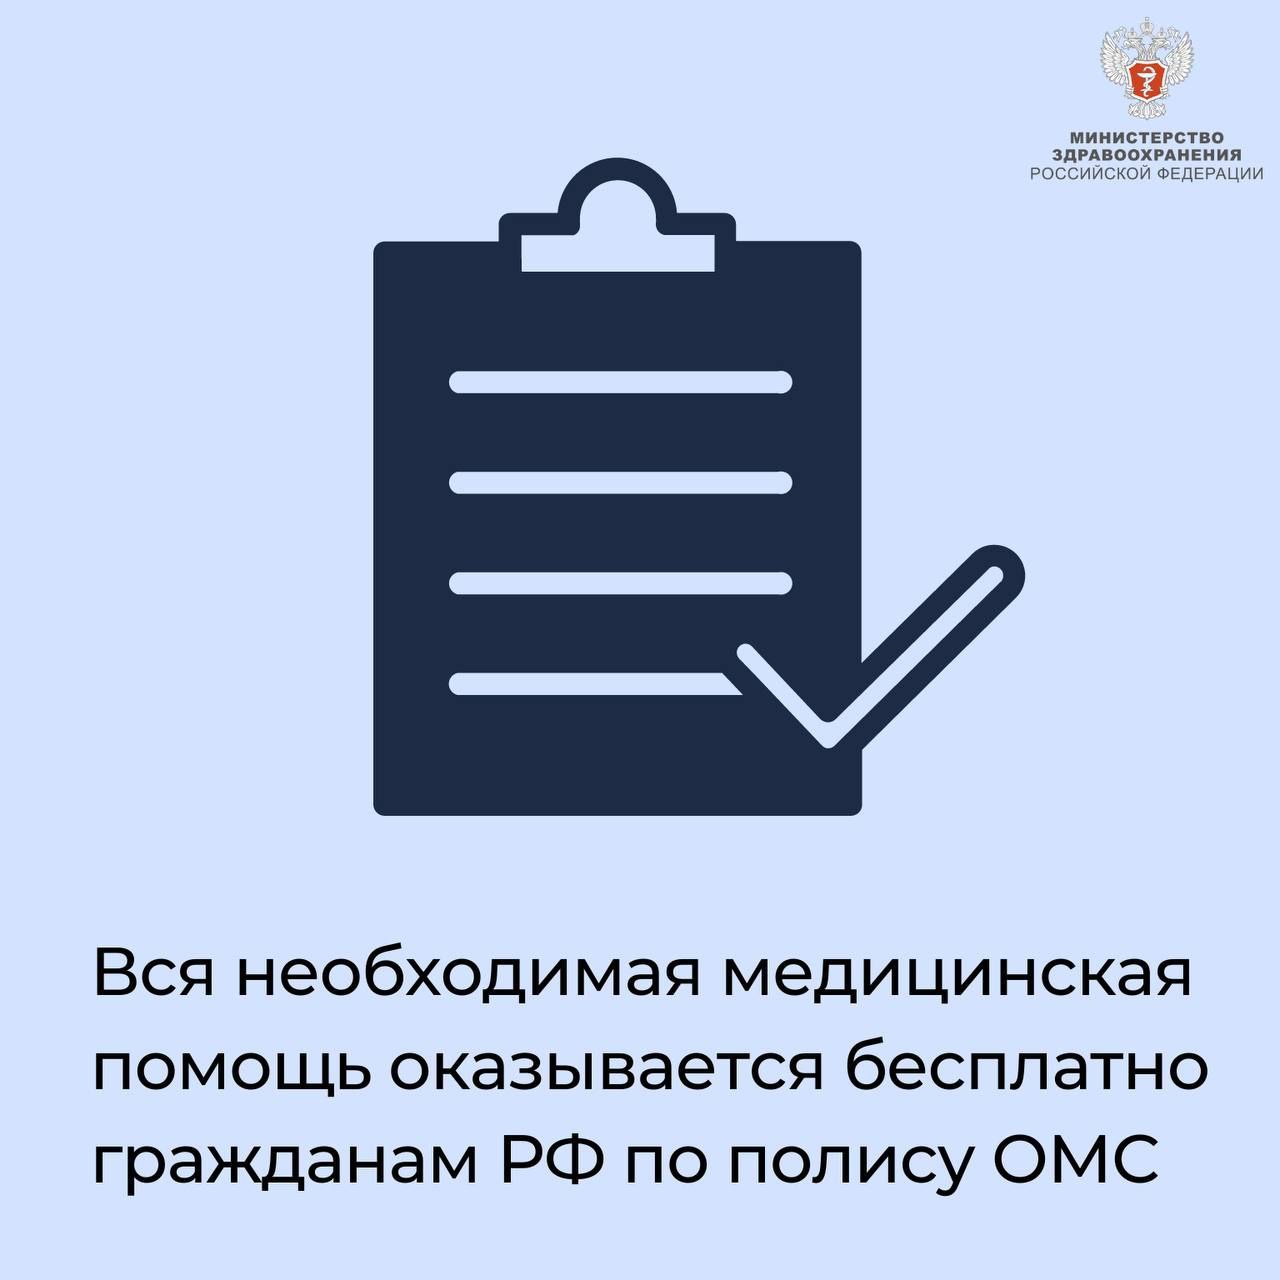 Вся необходимая медицинская помощь оказывается бесплатно гражданам РФ по полису ОМС